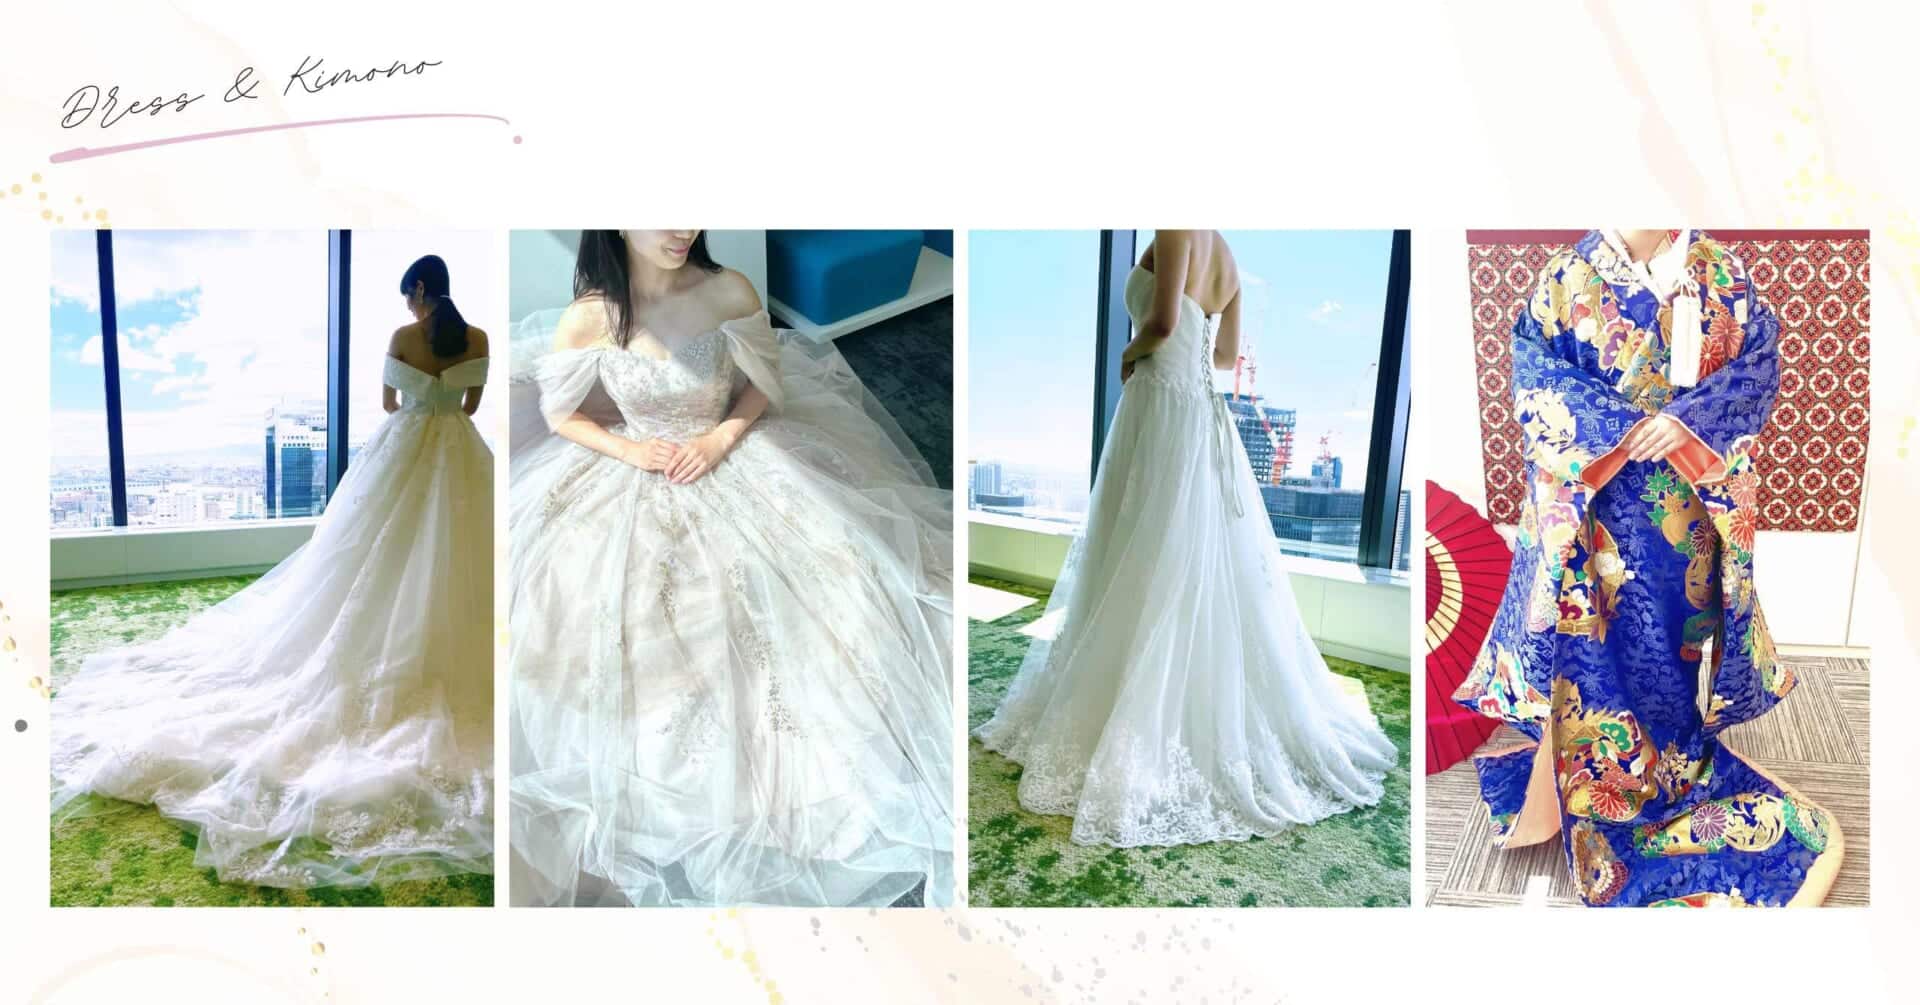 参加費無料でドレス試着や式場探しができる大阪のウエディングイベント「花嫁ドレスフェスタ」で実際にドレスと和装を試着している様子